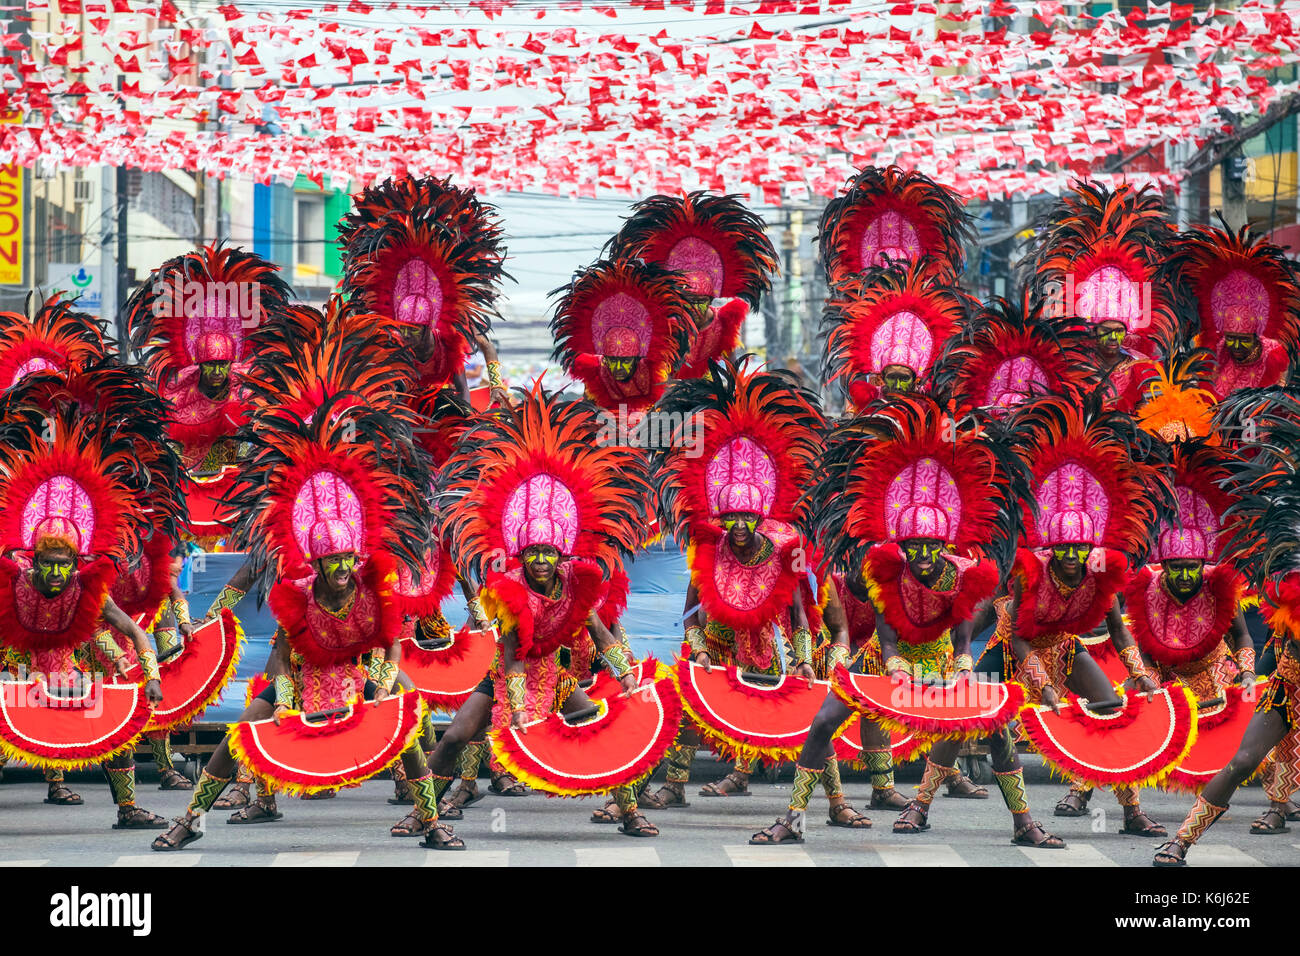 Les guerriers d'ati au festival dinagyang, Iloilo, philippines Banque D'Images